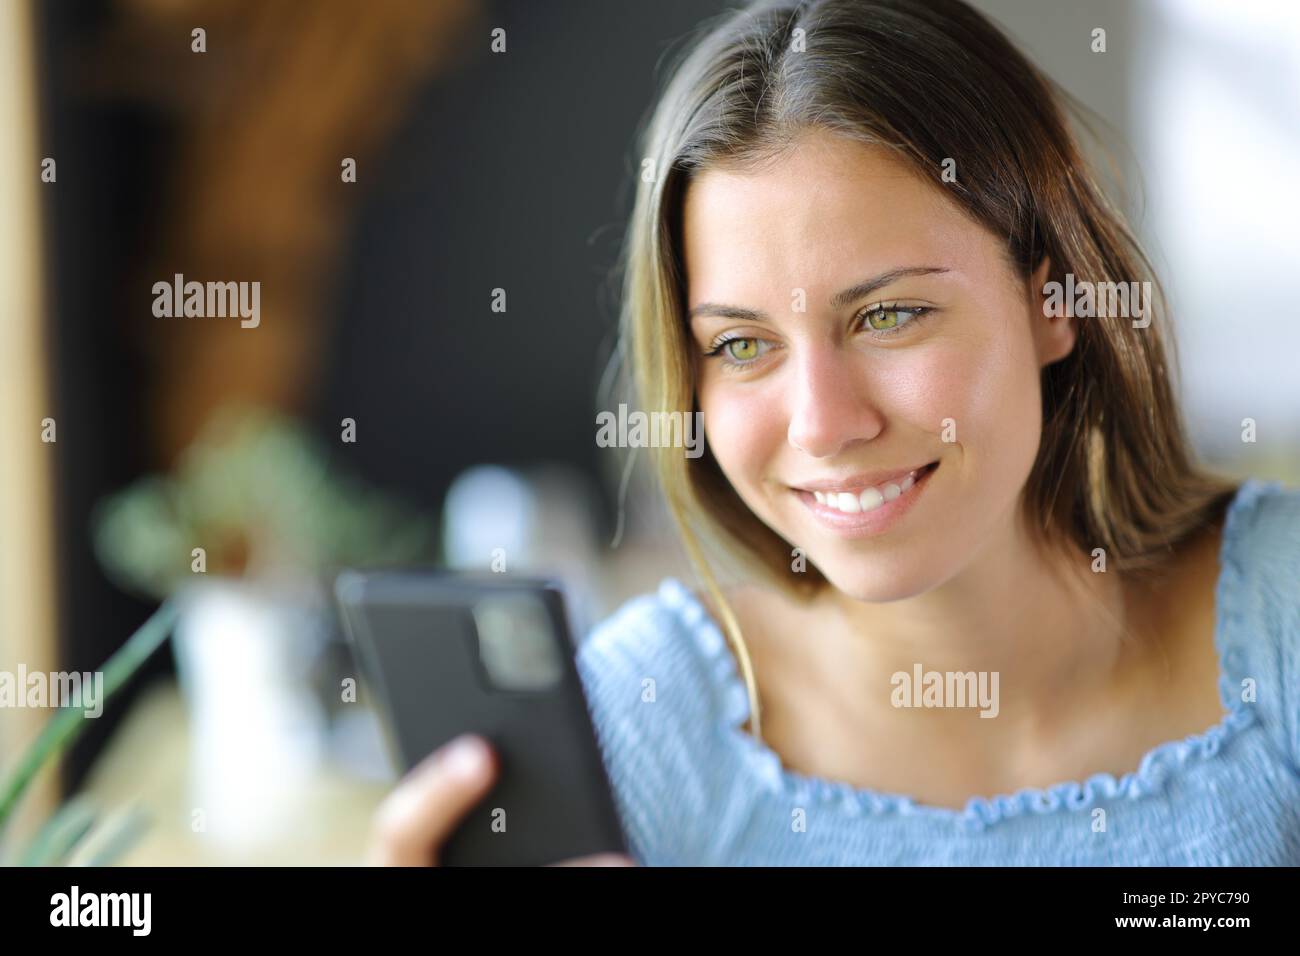 Heureux adolescent vérifiant le téléphone cellulaire dans une maison Banque D'Images